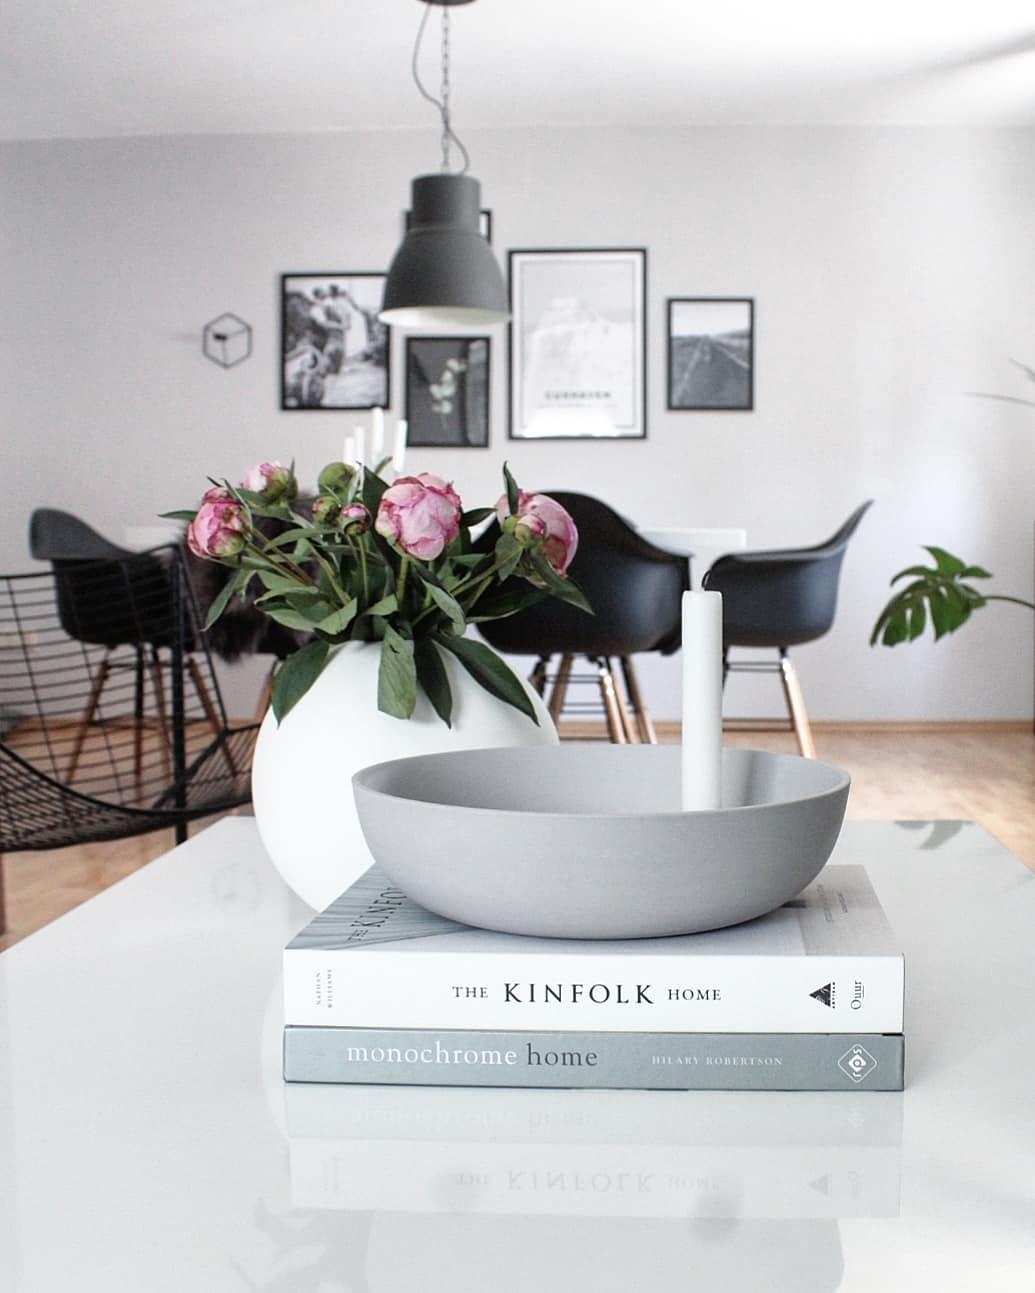 Angenehme Nacht für alle♡ #lidatorp #livingroomdecor #skandinavianstyle #minimalism 